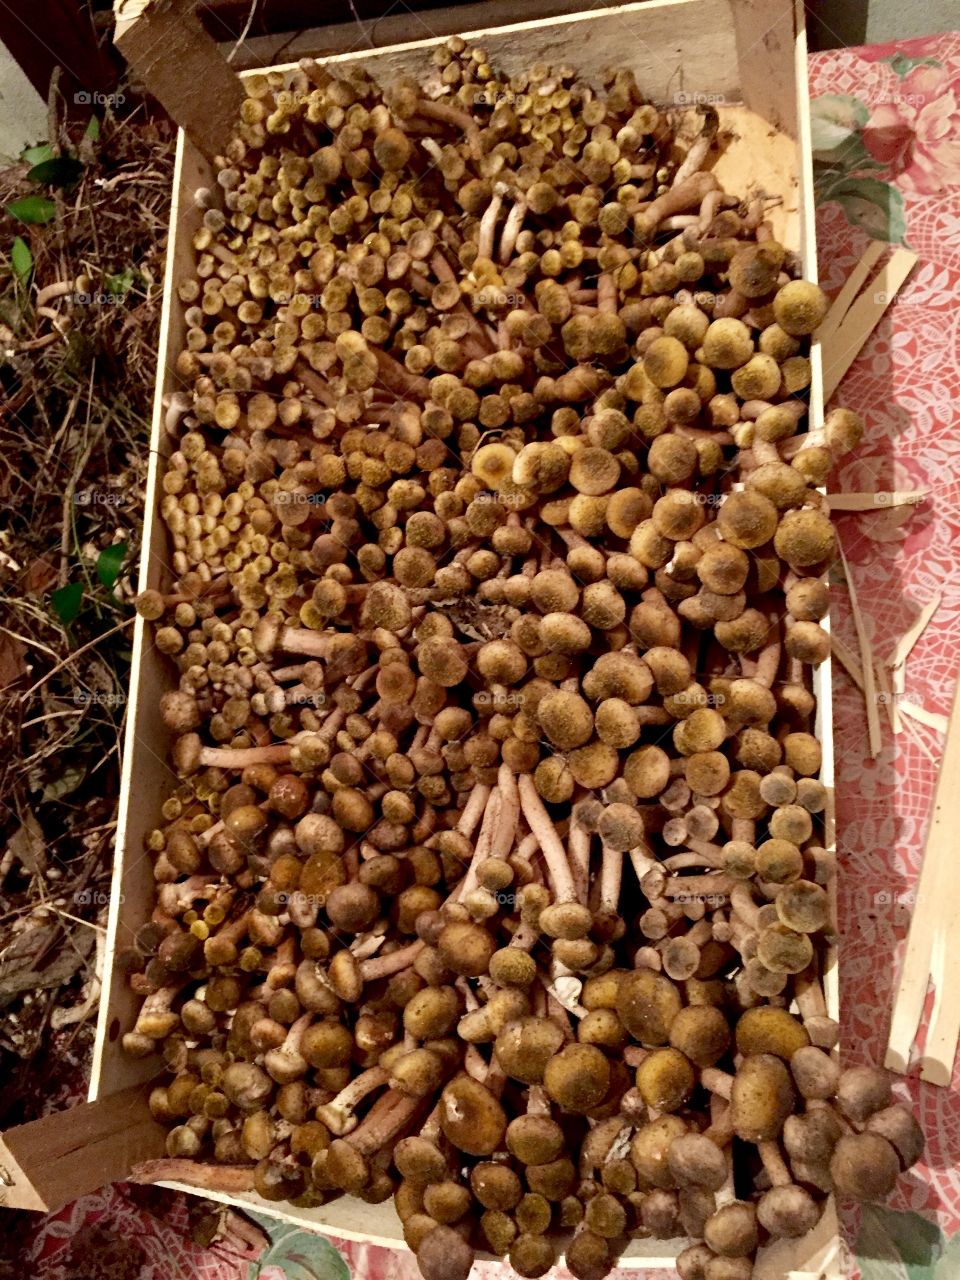 Chiodini mushrooms